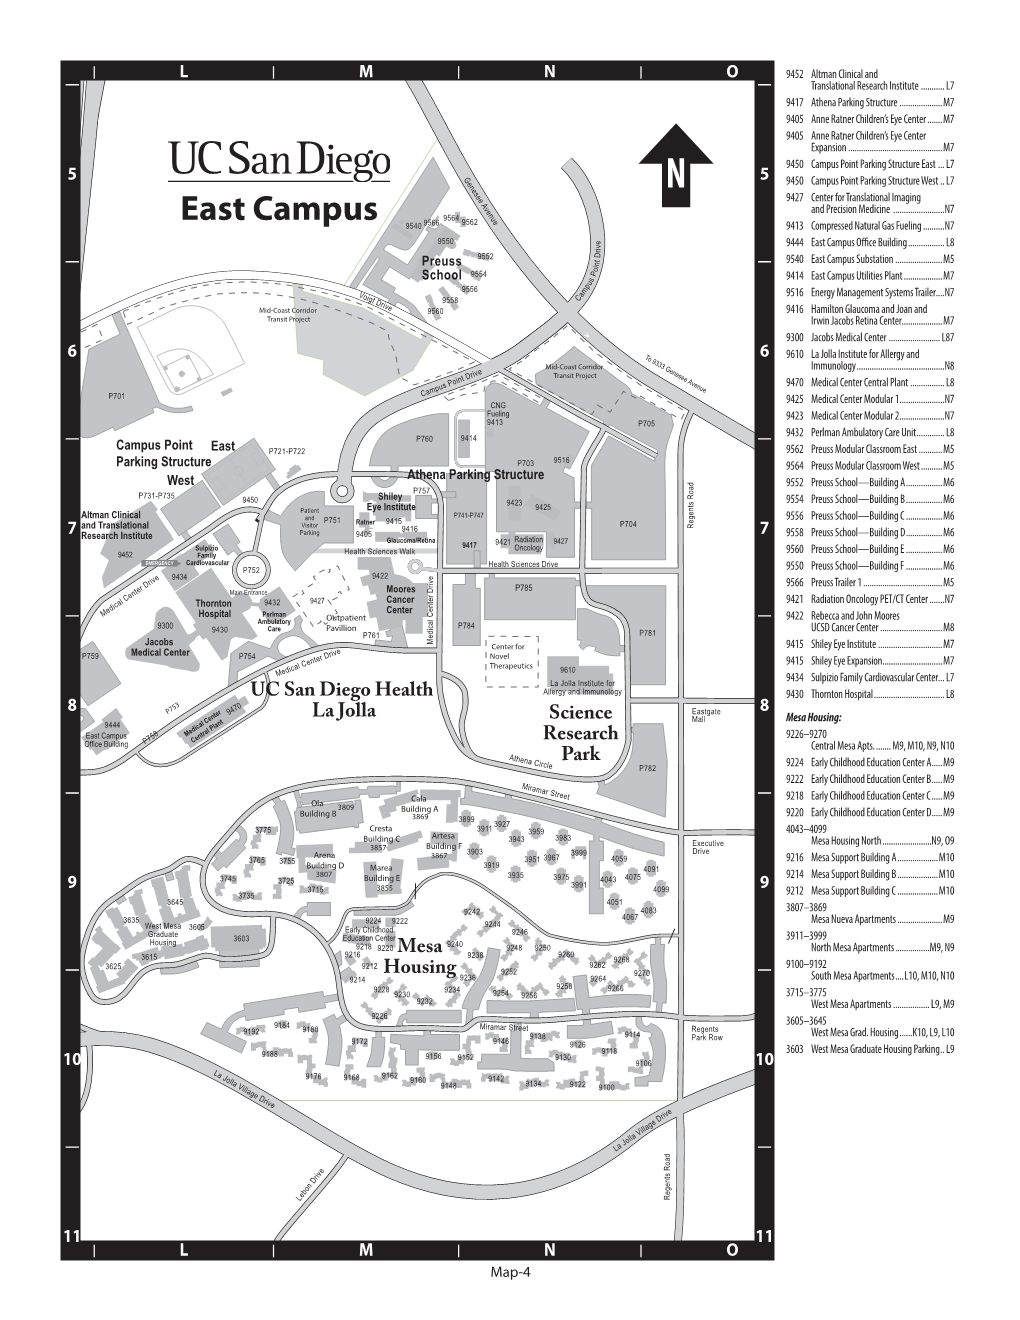 East Campus (PDF)